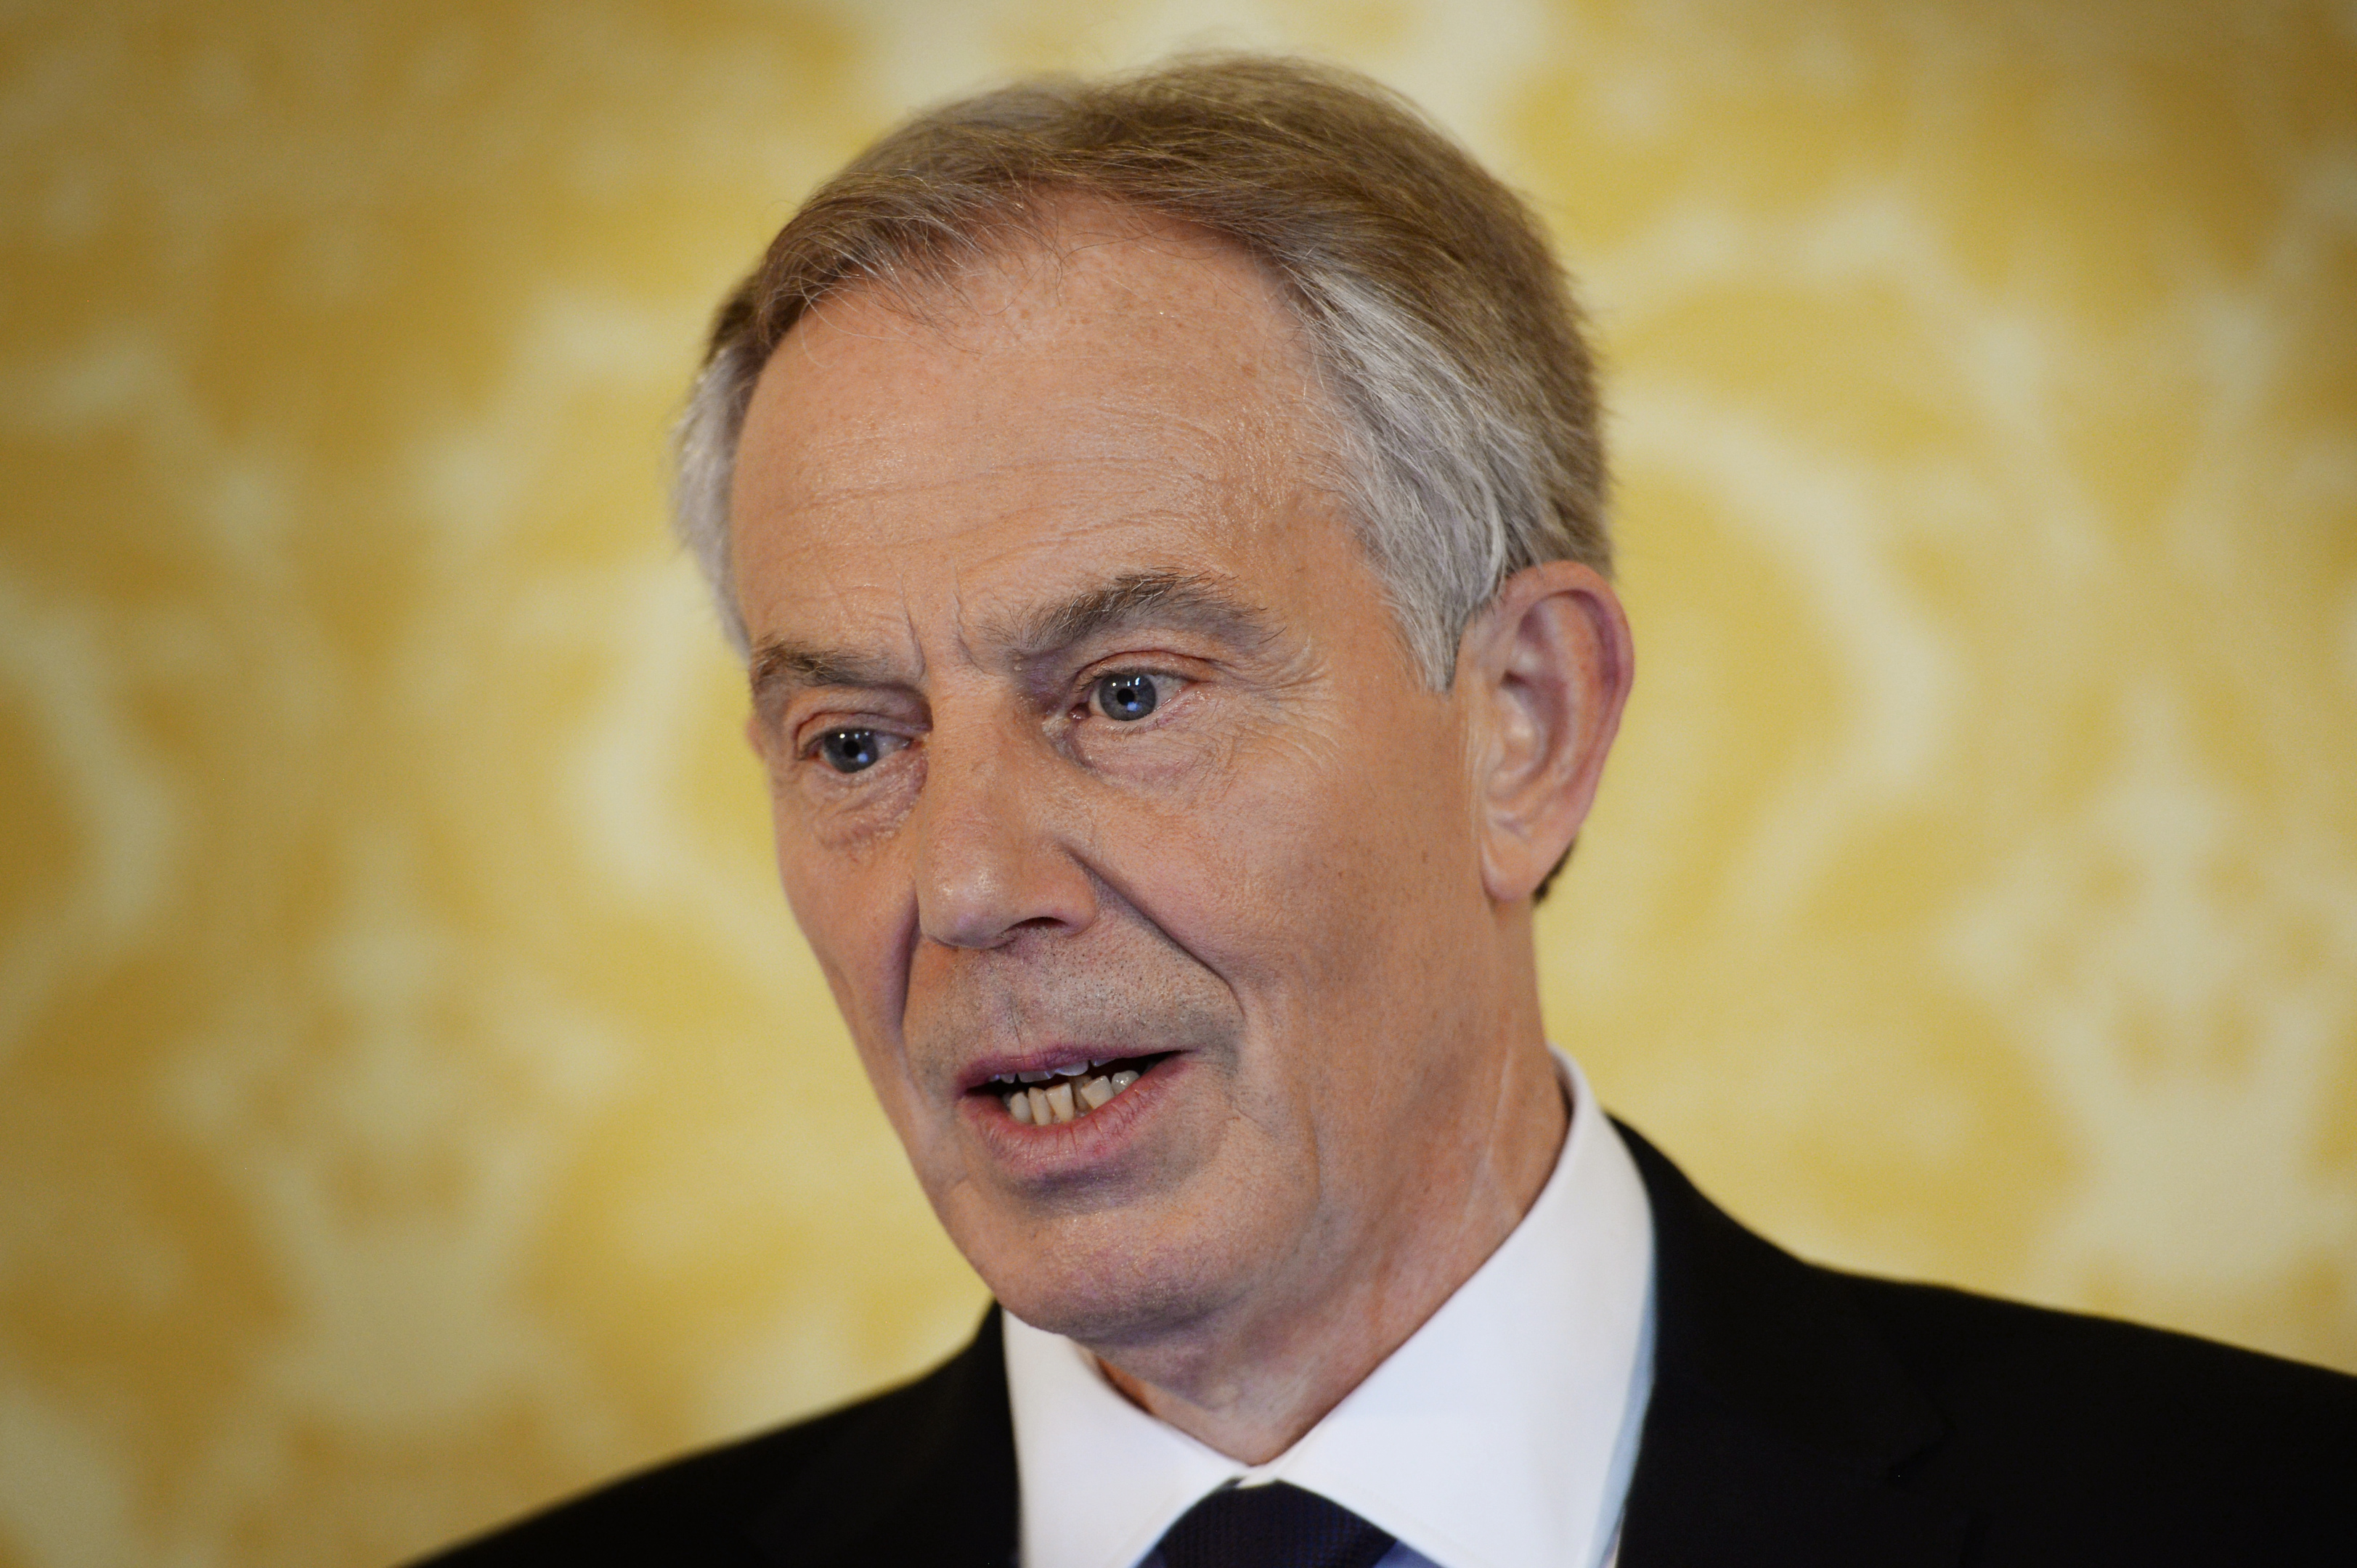 Former Prime Minister, Tony Blair